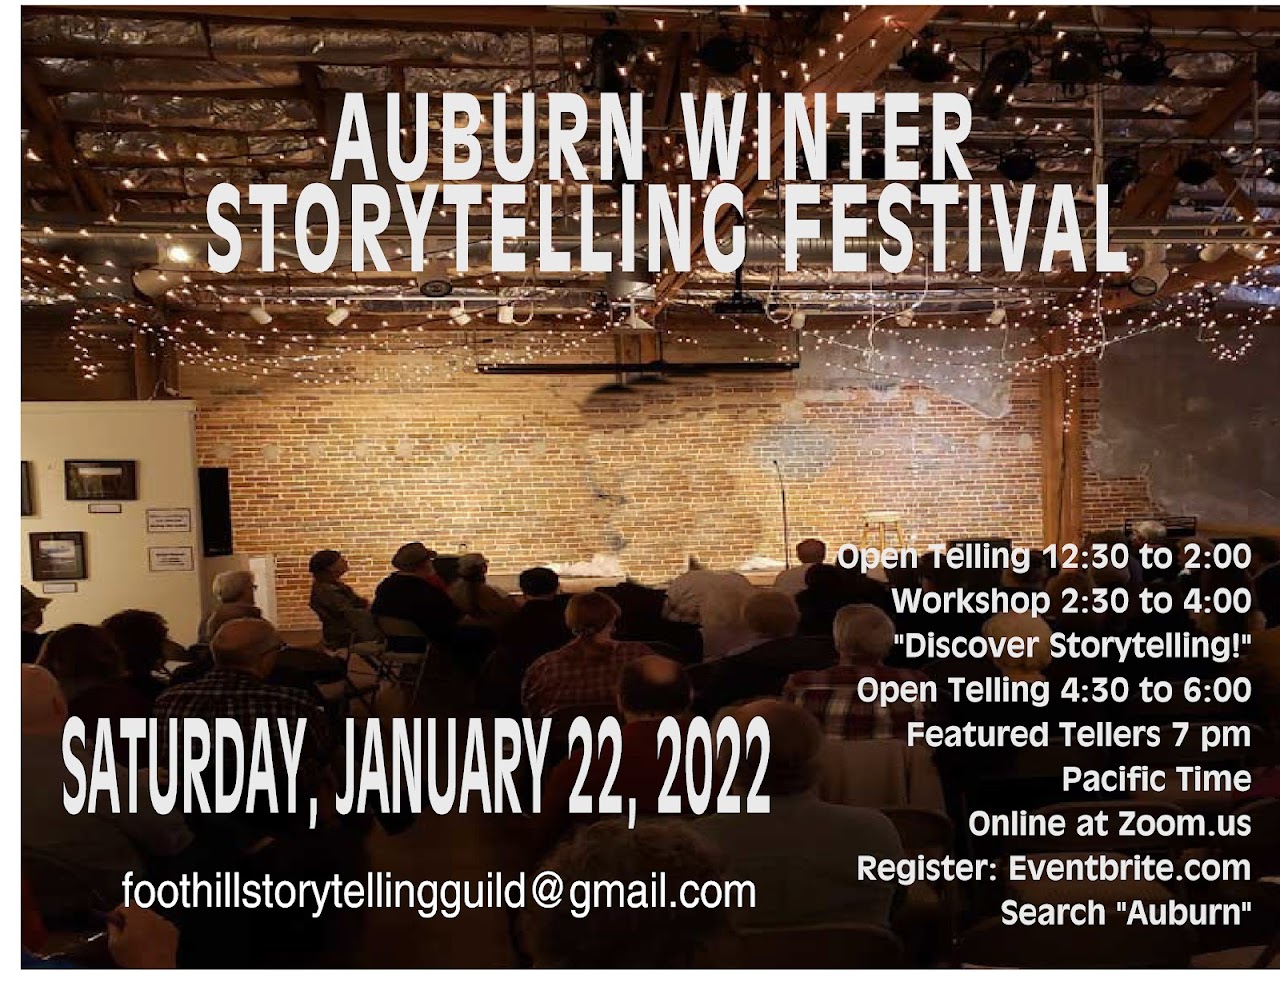 Auburn Winter Storytelling Festival